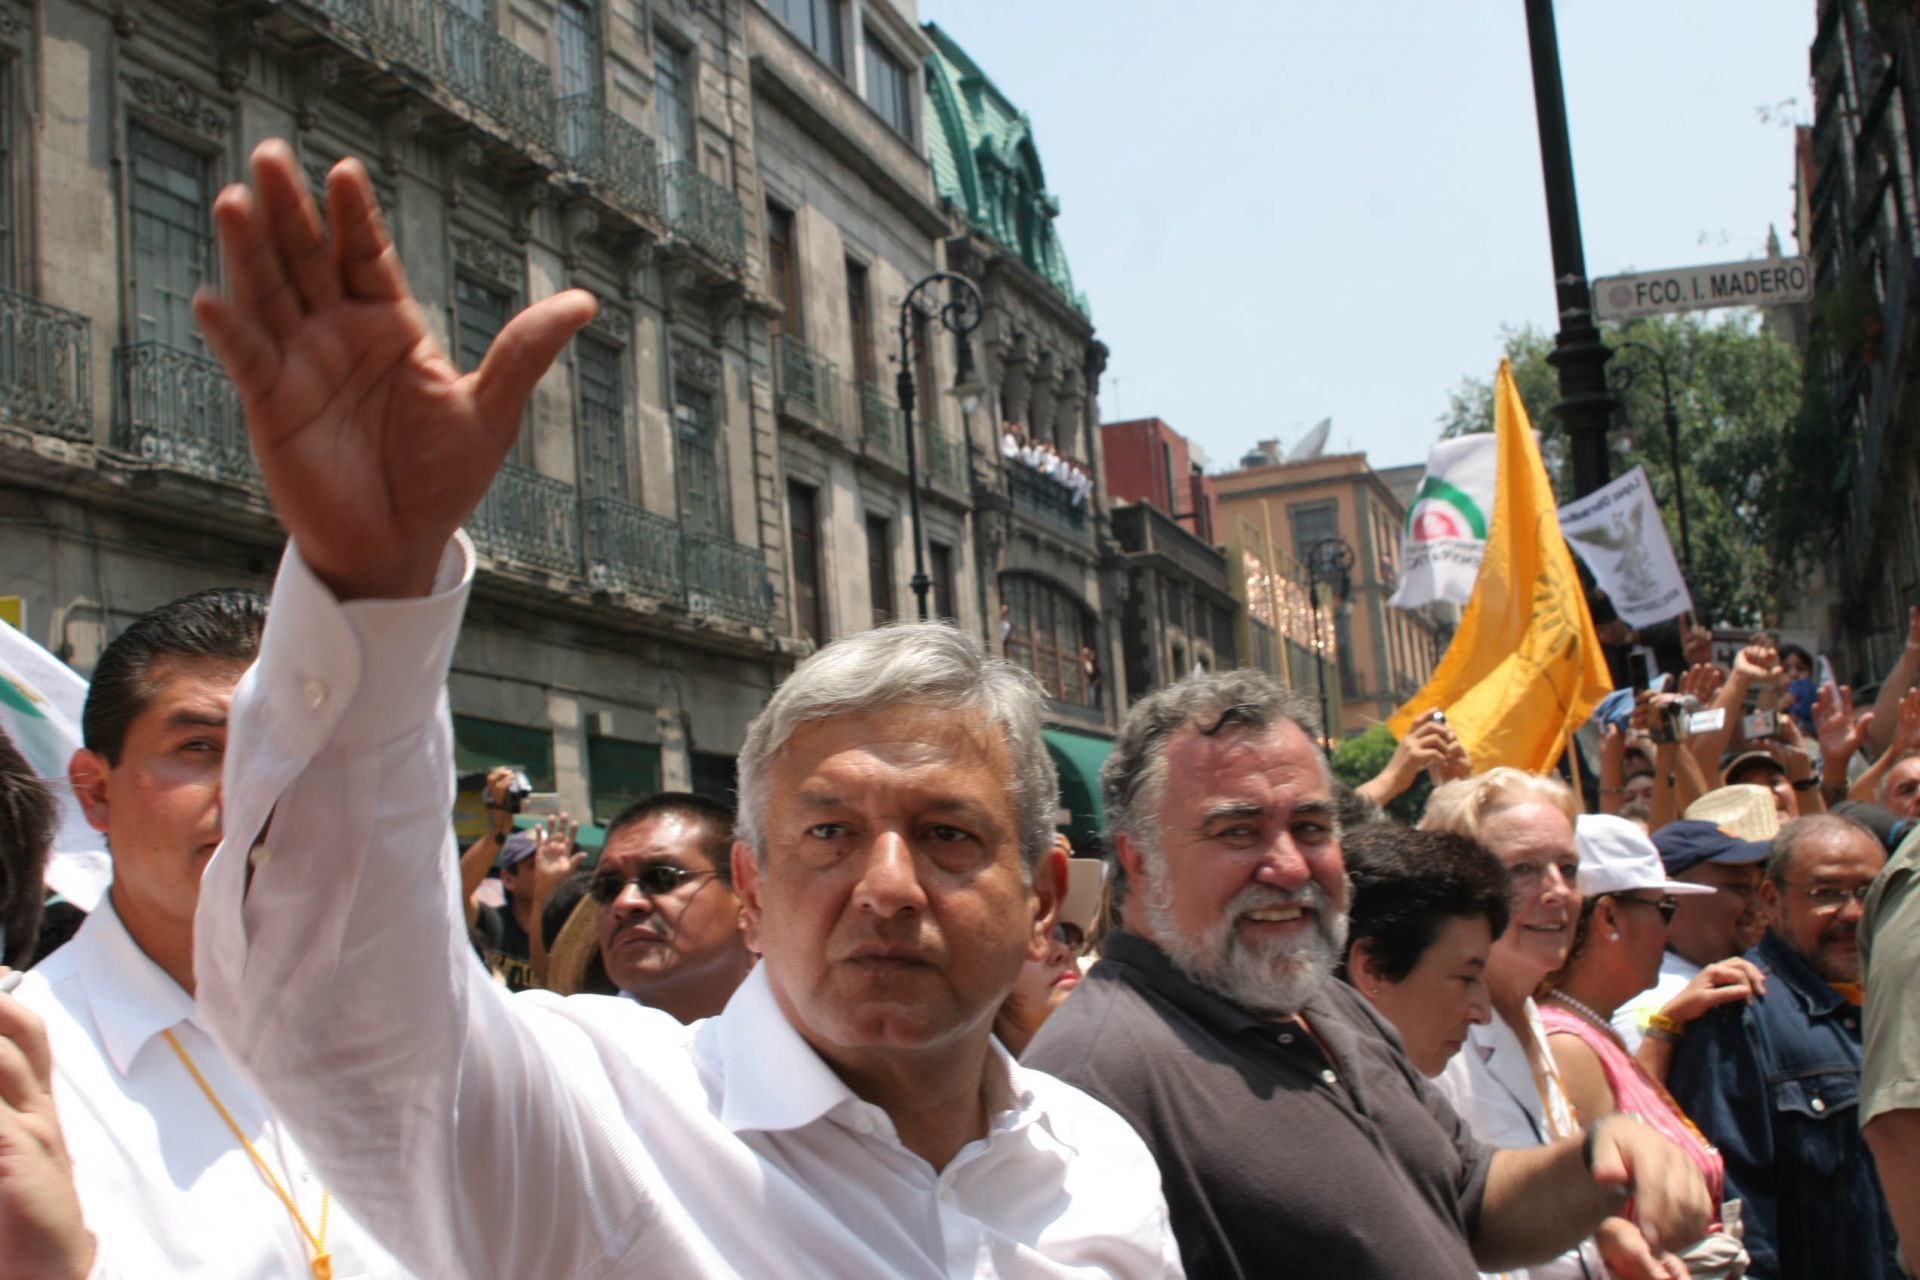 MEXIKO-STADT 01JULI2007.- Tausende von Unterstützern des ehemaligen Präsidentschaftskandidaten für die Koalition zum Wohle aller, Andres Manuel Lopez Obrador, gipfelten in einer Kundgebung im Zocalo der Hauptstadt, dem Marsch, der den Engel der Unabhängigkeit verließ, um an ein Jahr des mutmaßlichen Wahlbetrugs zu erinnern.
FOTO: ADRIANA ALVAREZ/CUARTOSCURO.COM